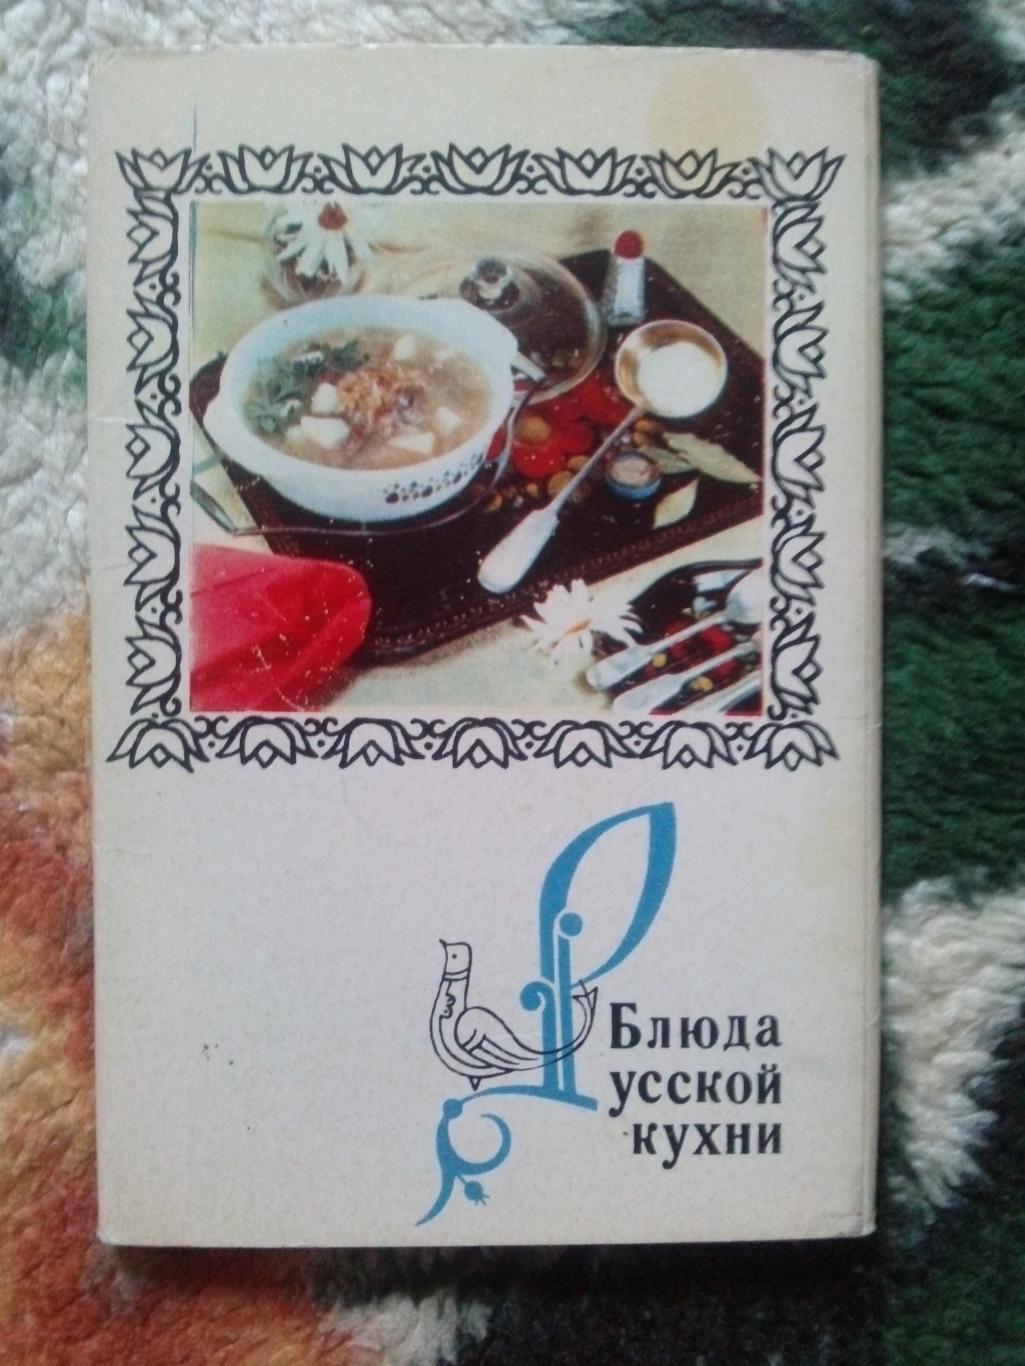 Блюда русской кухни 1970 г. полный набор - 15 открыток (Кулинария , рецепты)